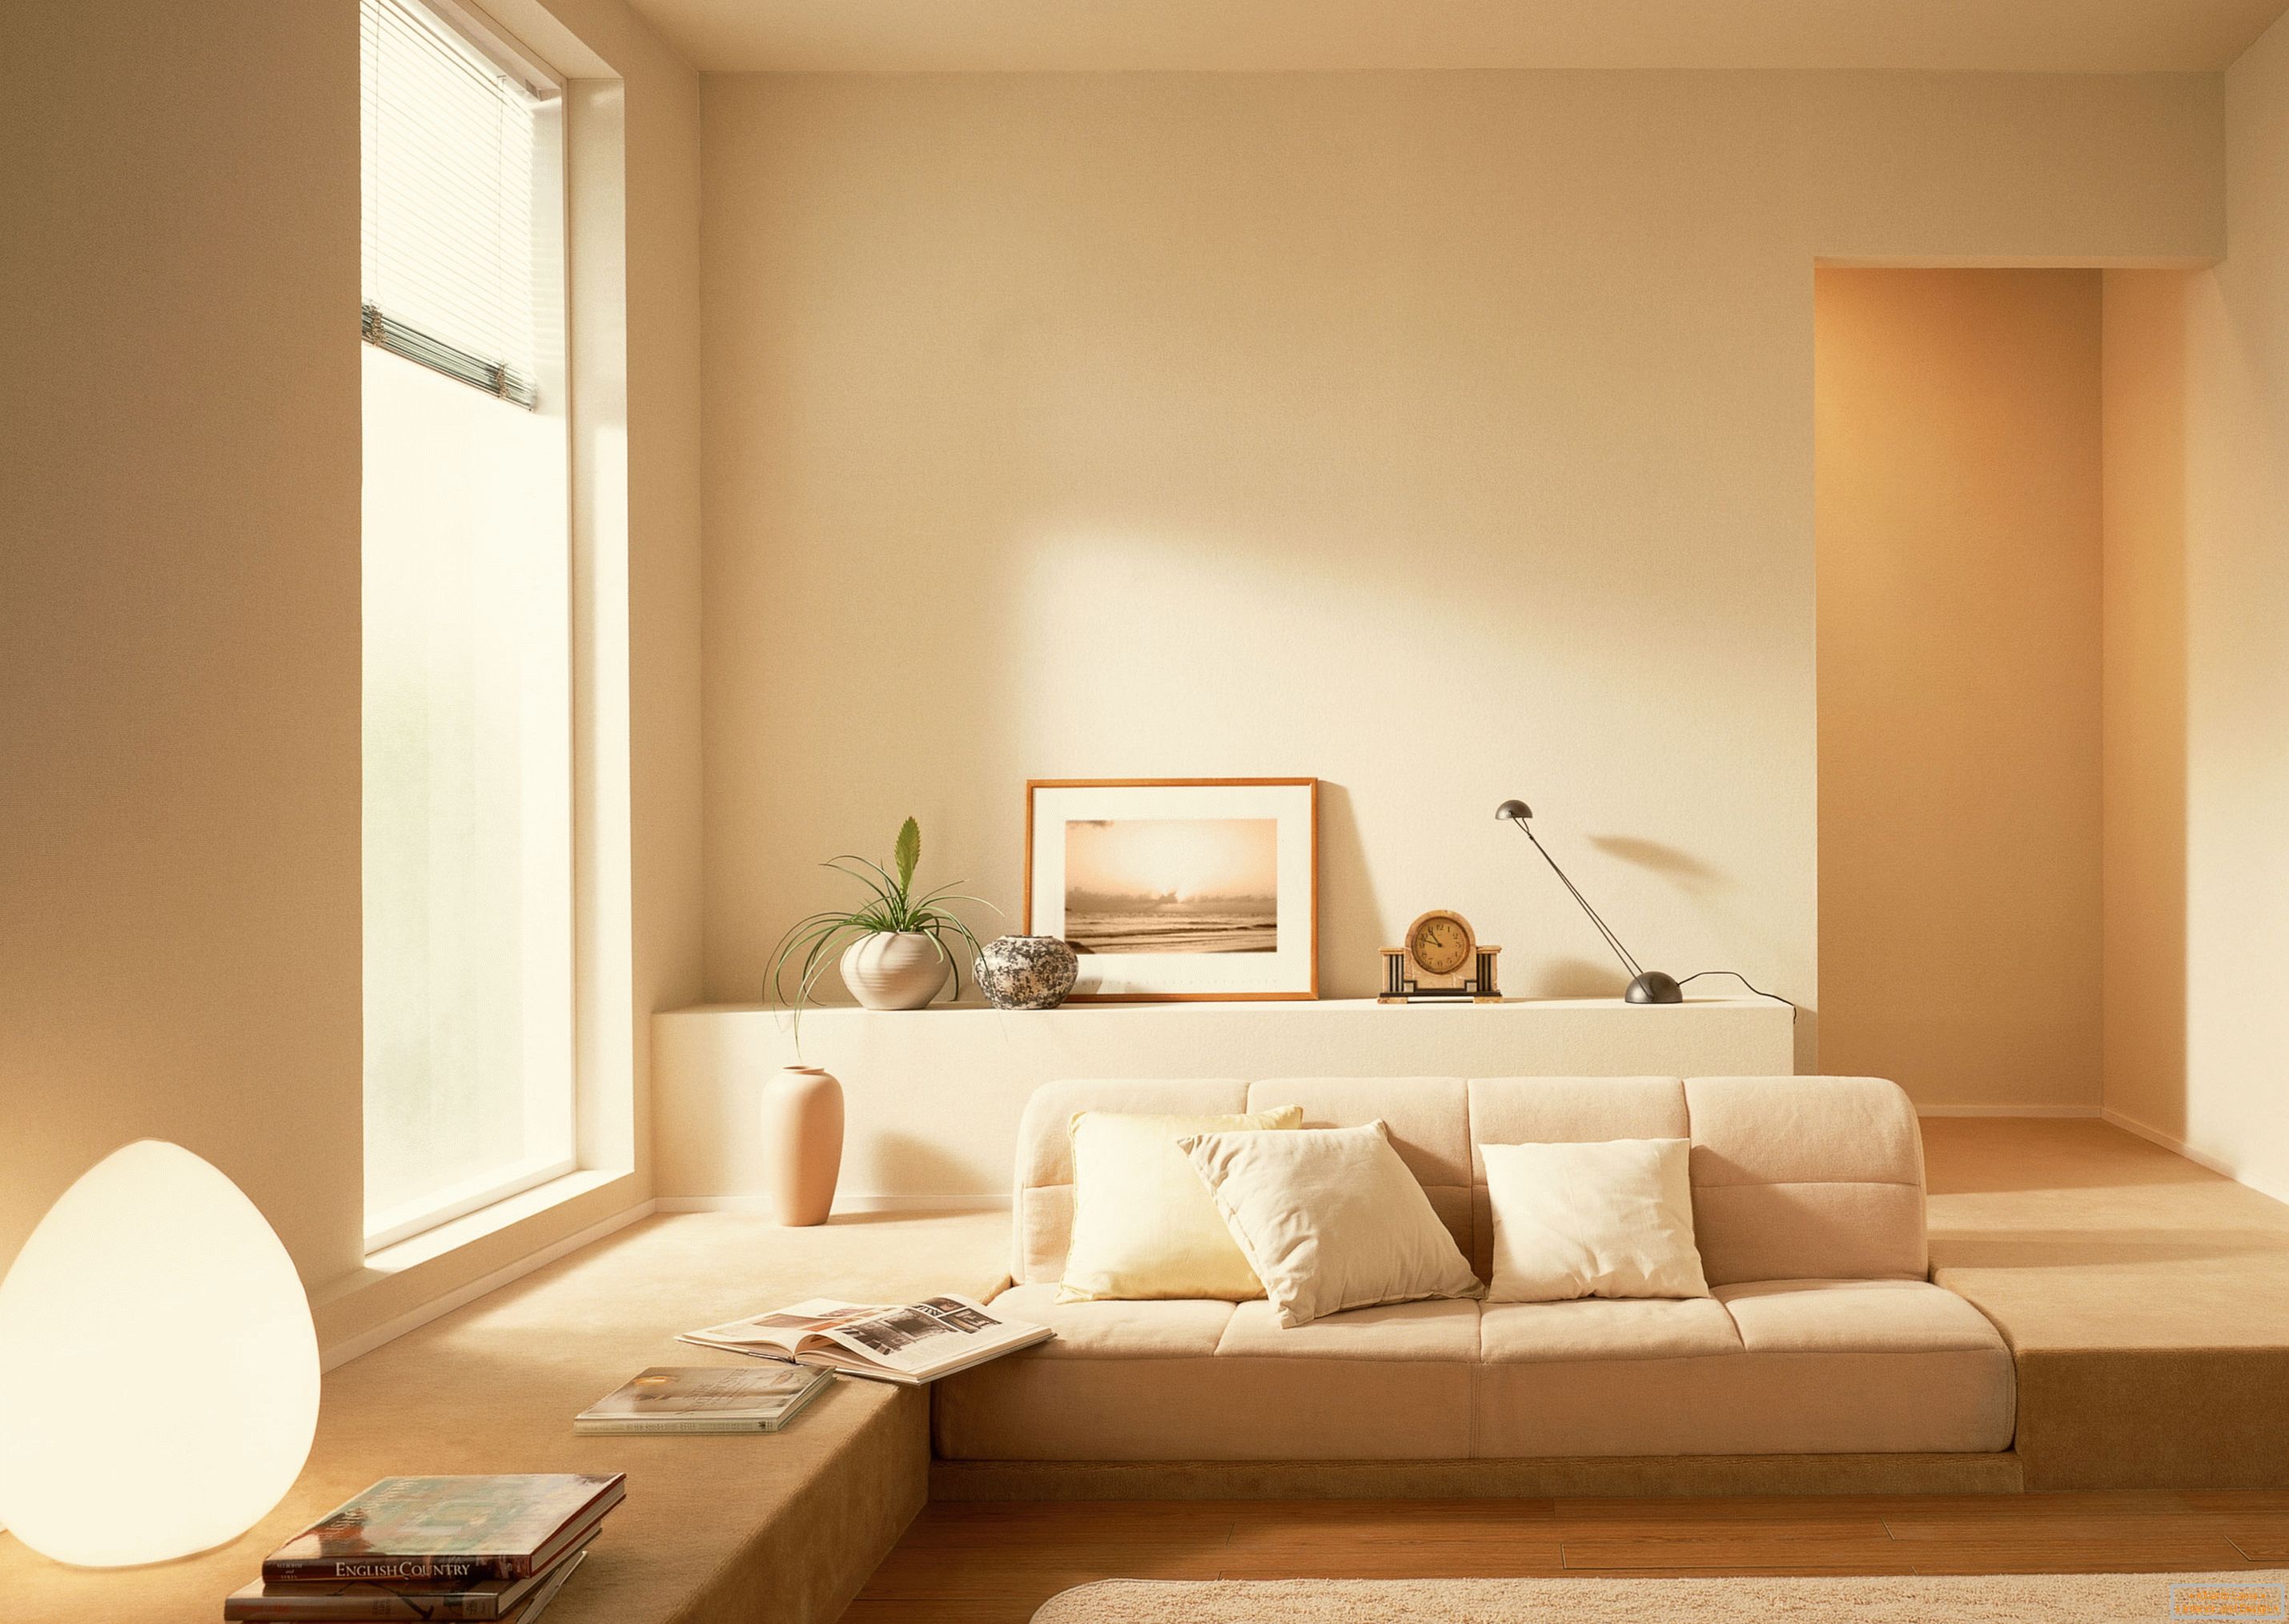 În conformitate cu stilul de minimalism, o nuanță calmă bej a fost folosit pentru a organiza interiorul camerei de zi.